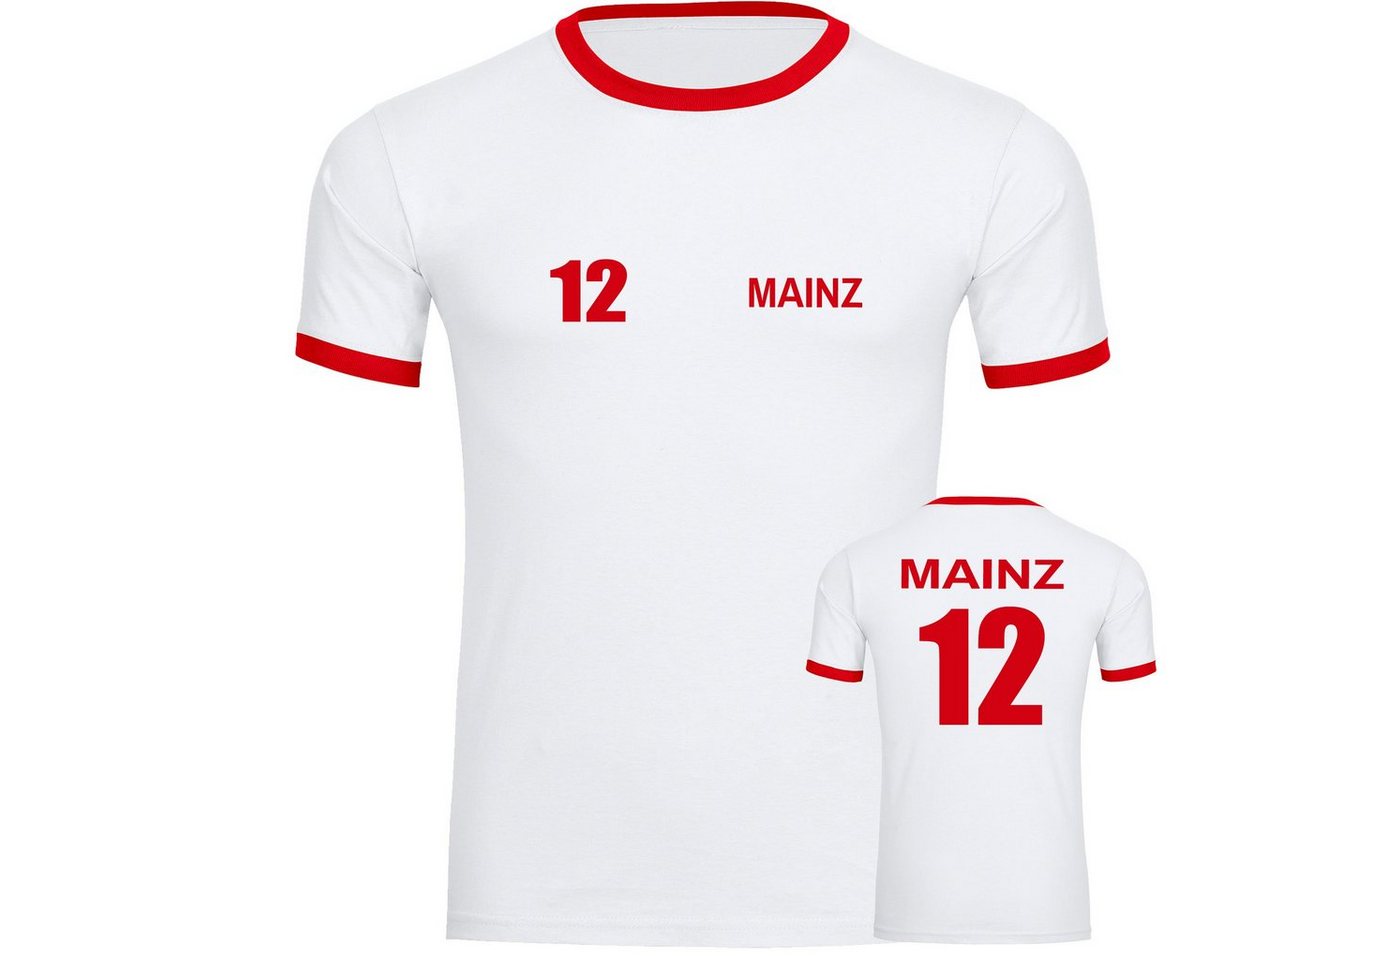 multifanshop T-Shirt Kontrast Mainz - Trikot 12 - Männer von multifanshop